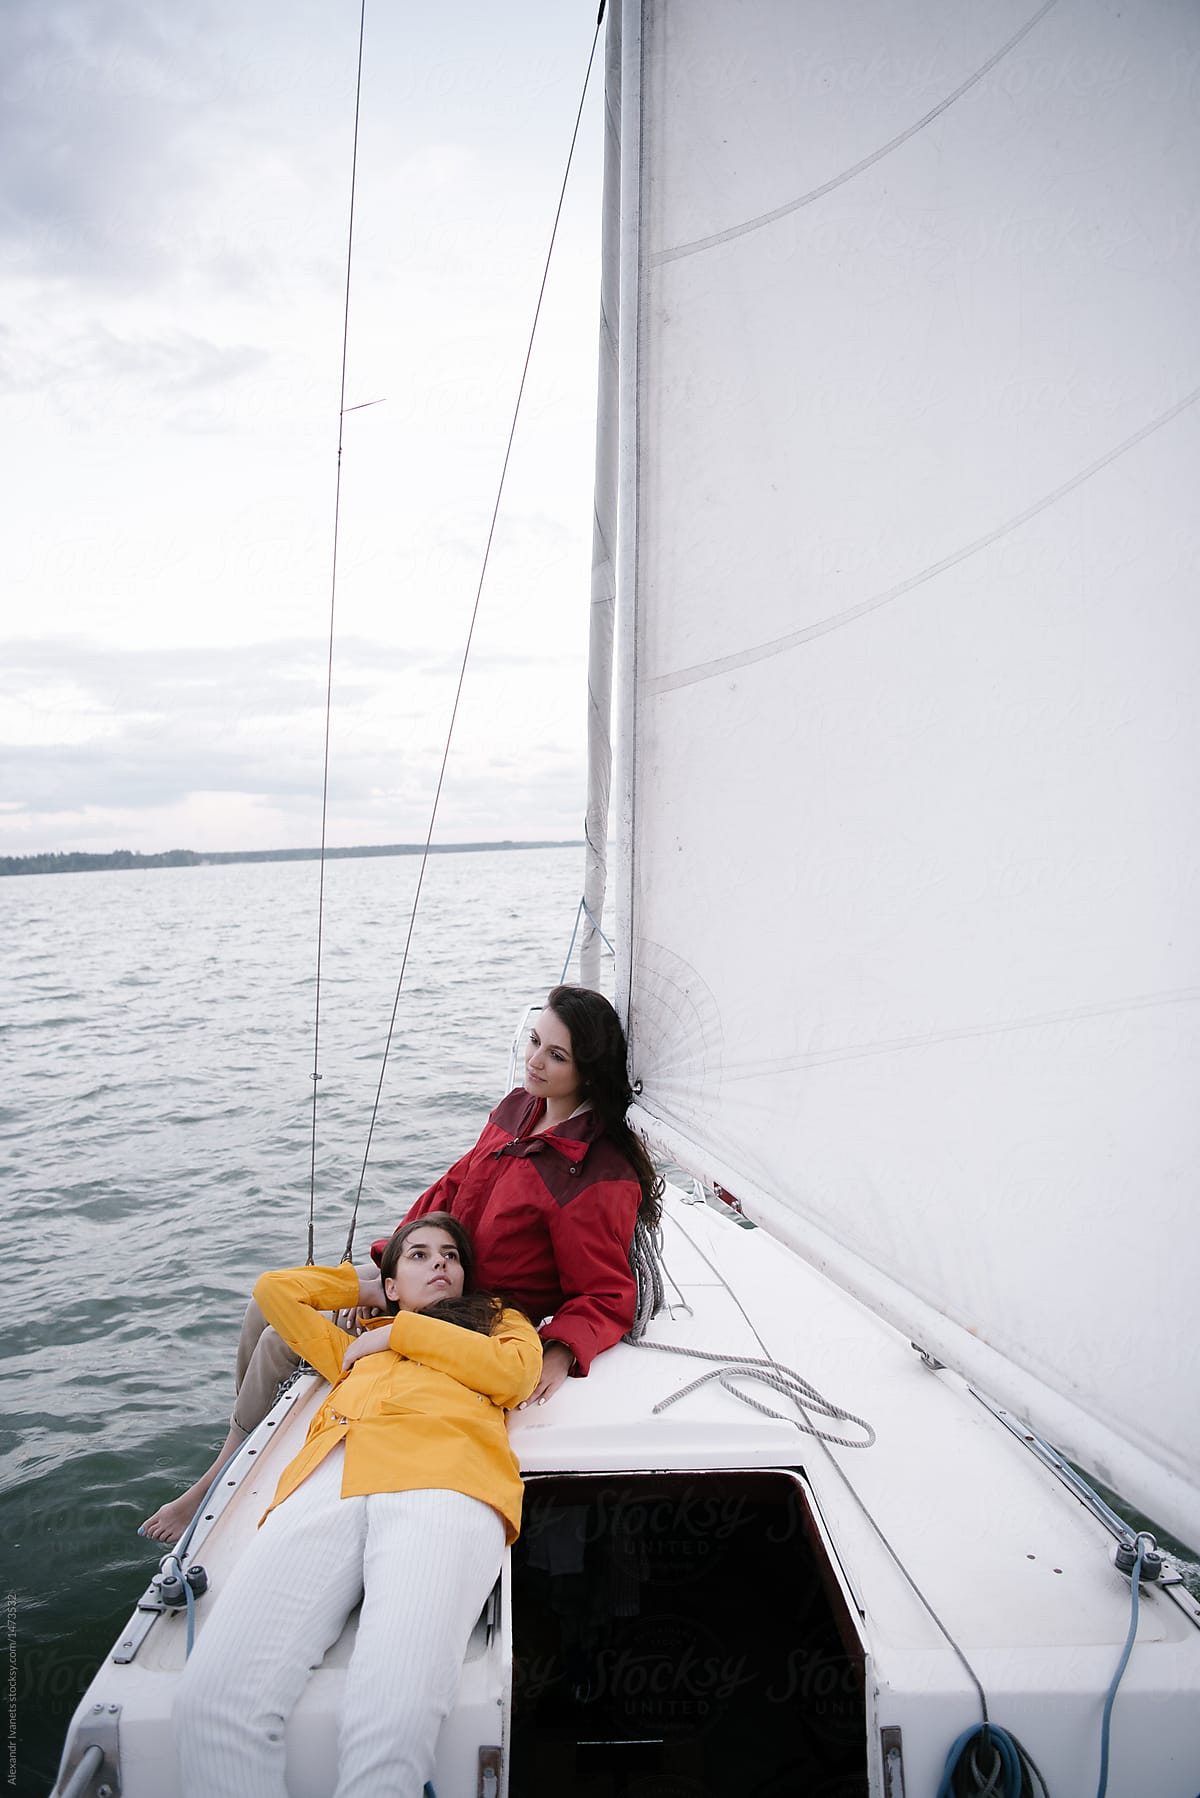 Bonding women posing on sailboat